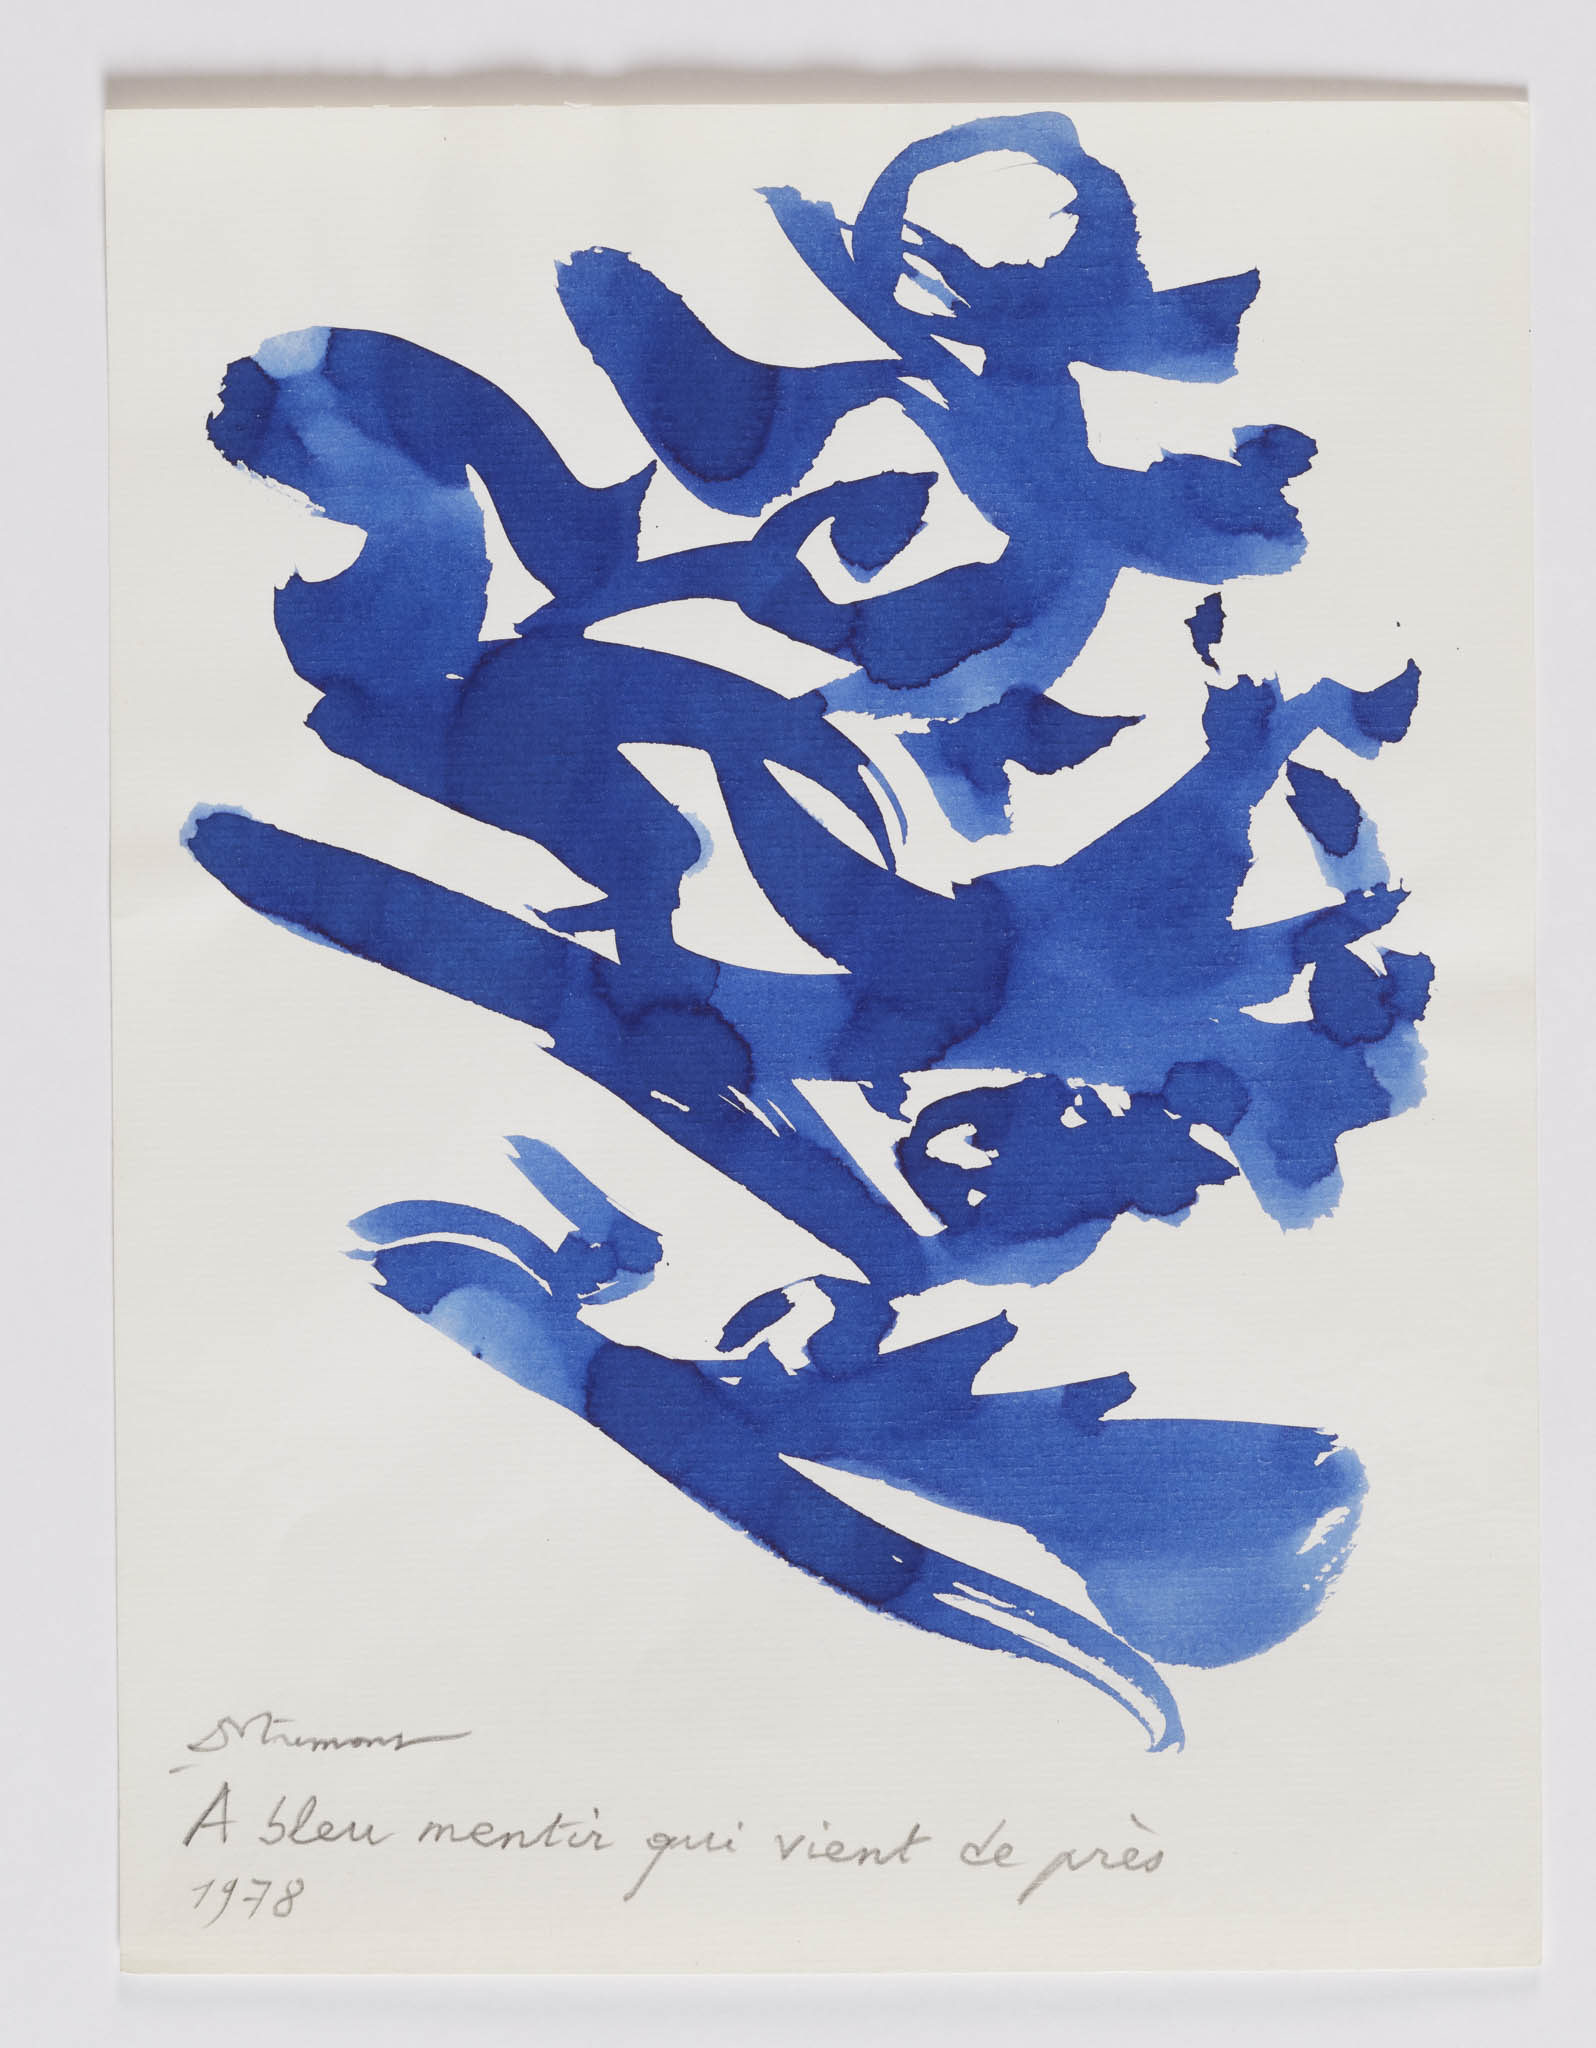 Christian Dotremont, A bleu mentir qui vient de près, logogramme, 1978